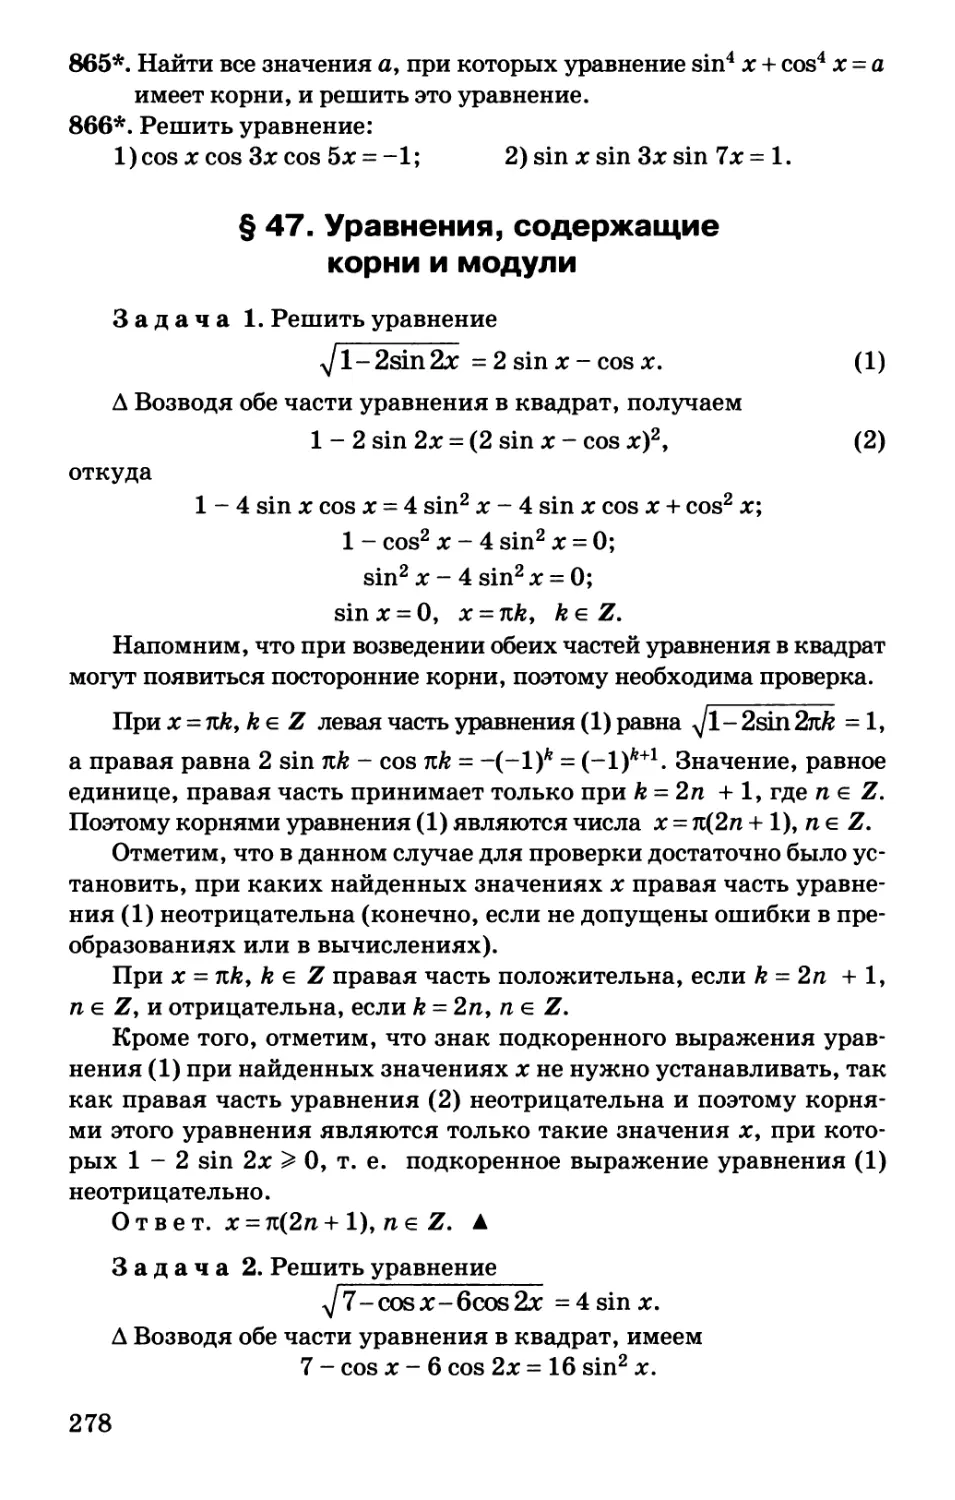 § 47. Уравнения, содержащие корни и модули